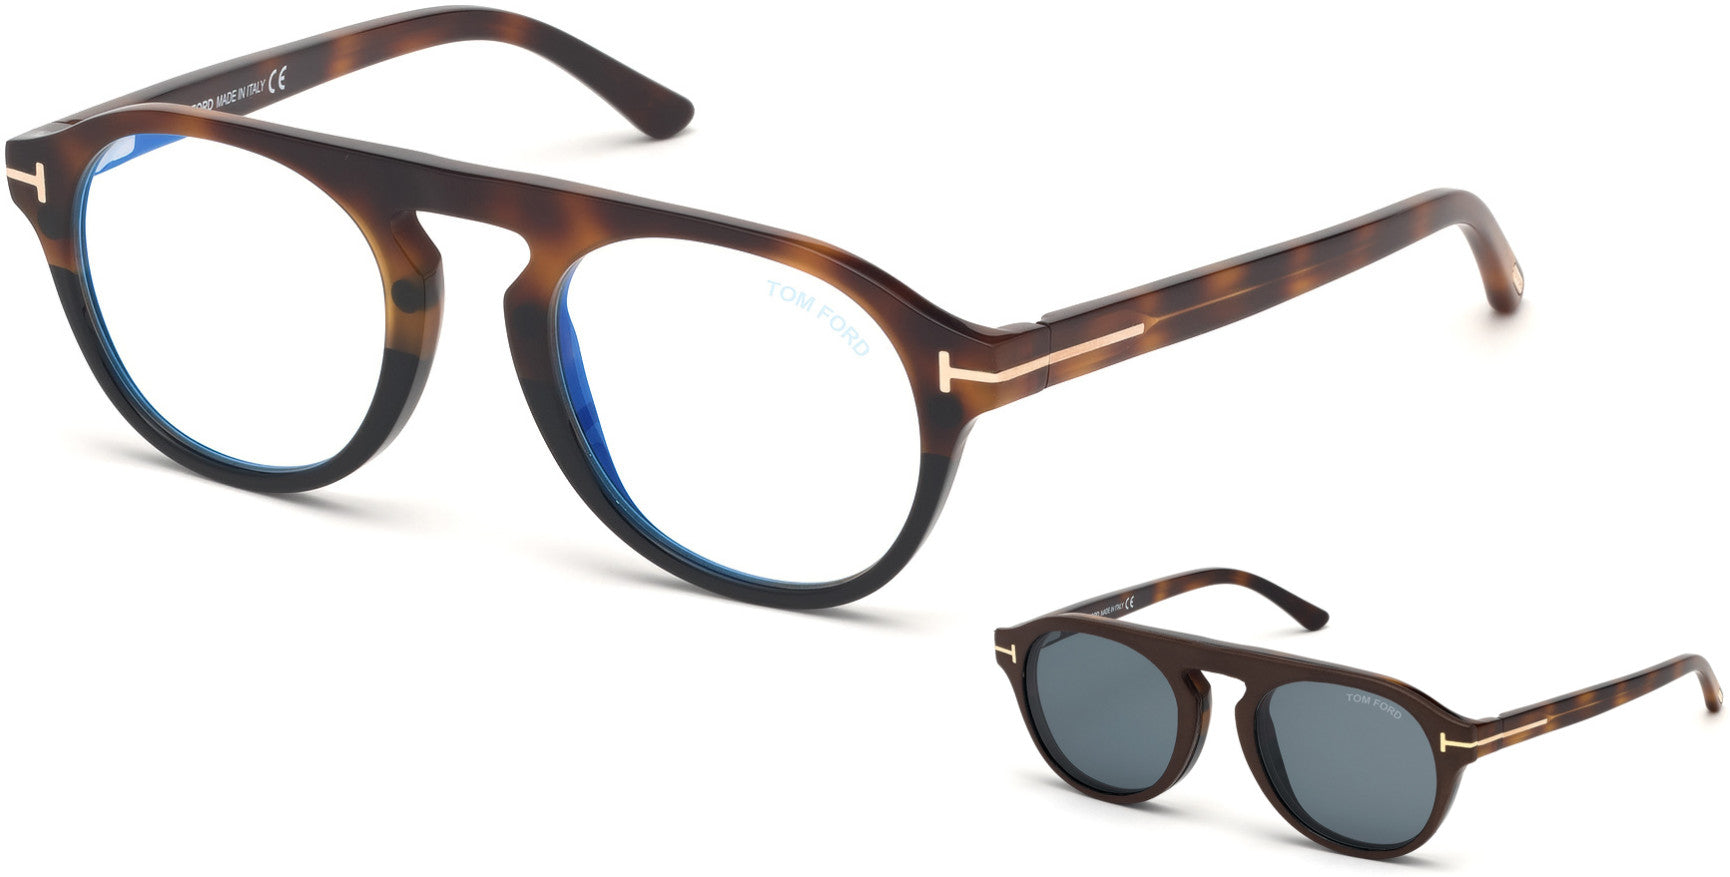 Tom Ford FT5533-B Oval Eyeglasses 56V-56V - Havana-To-Black/ Blue Block Lenses, Vintage Blue Clip In Brown Leather